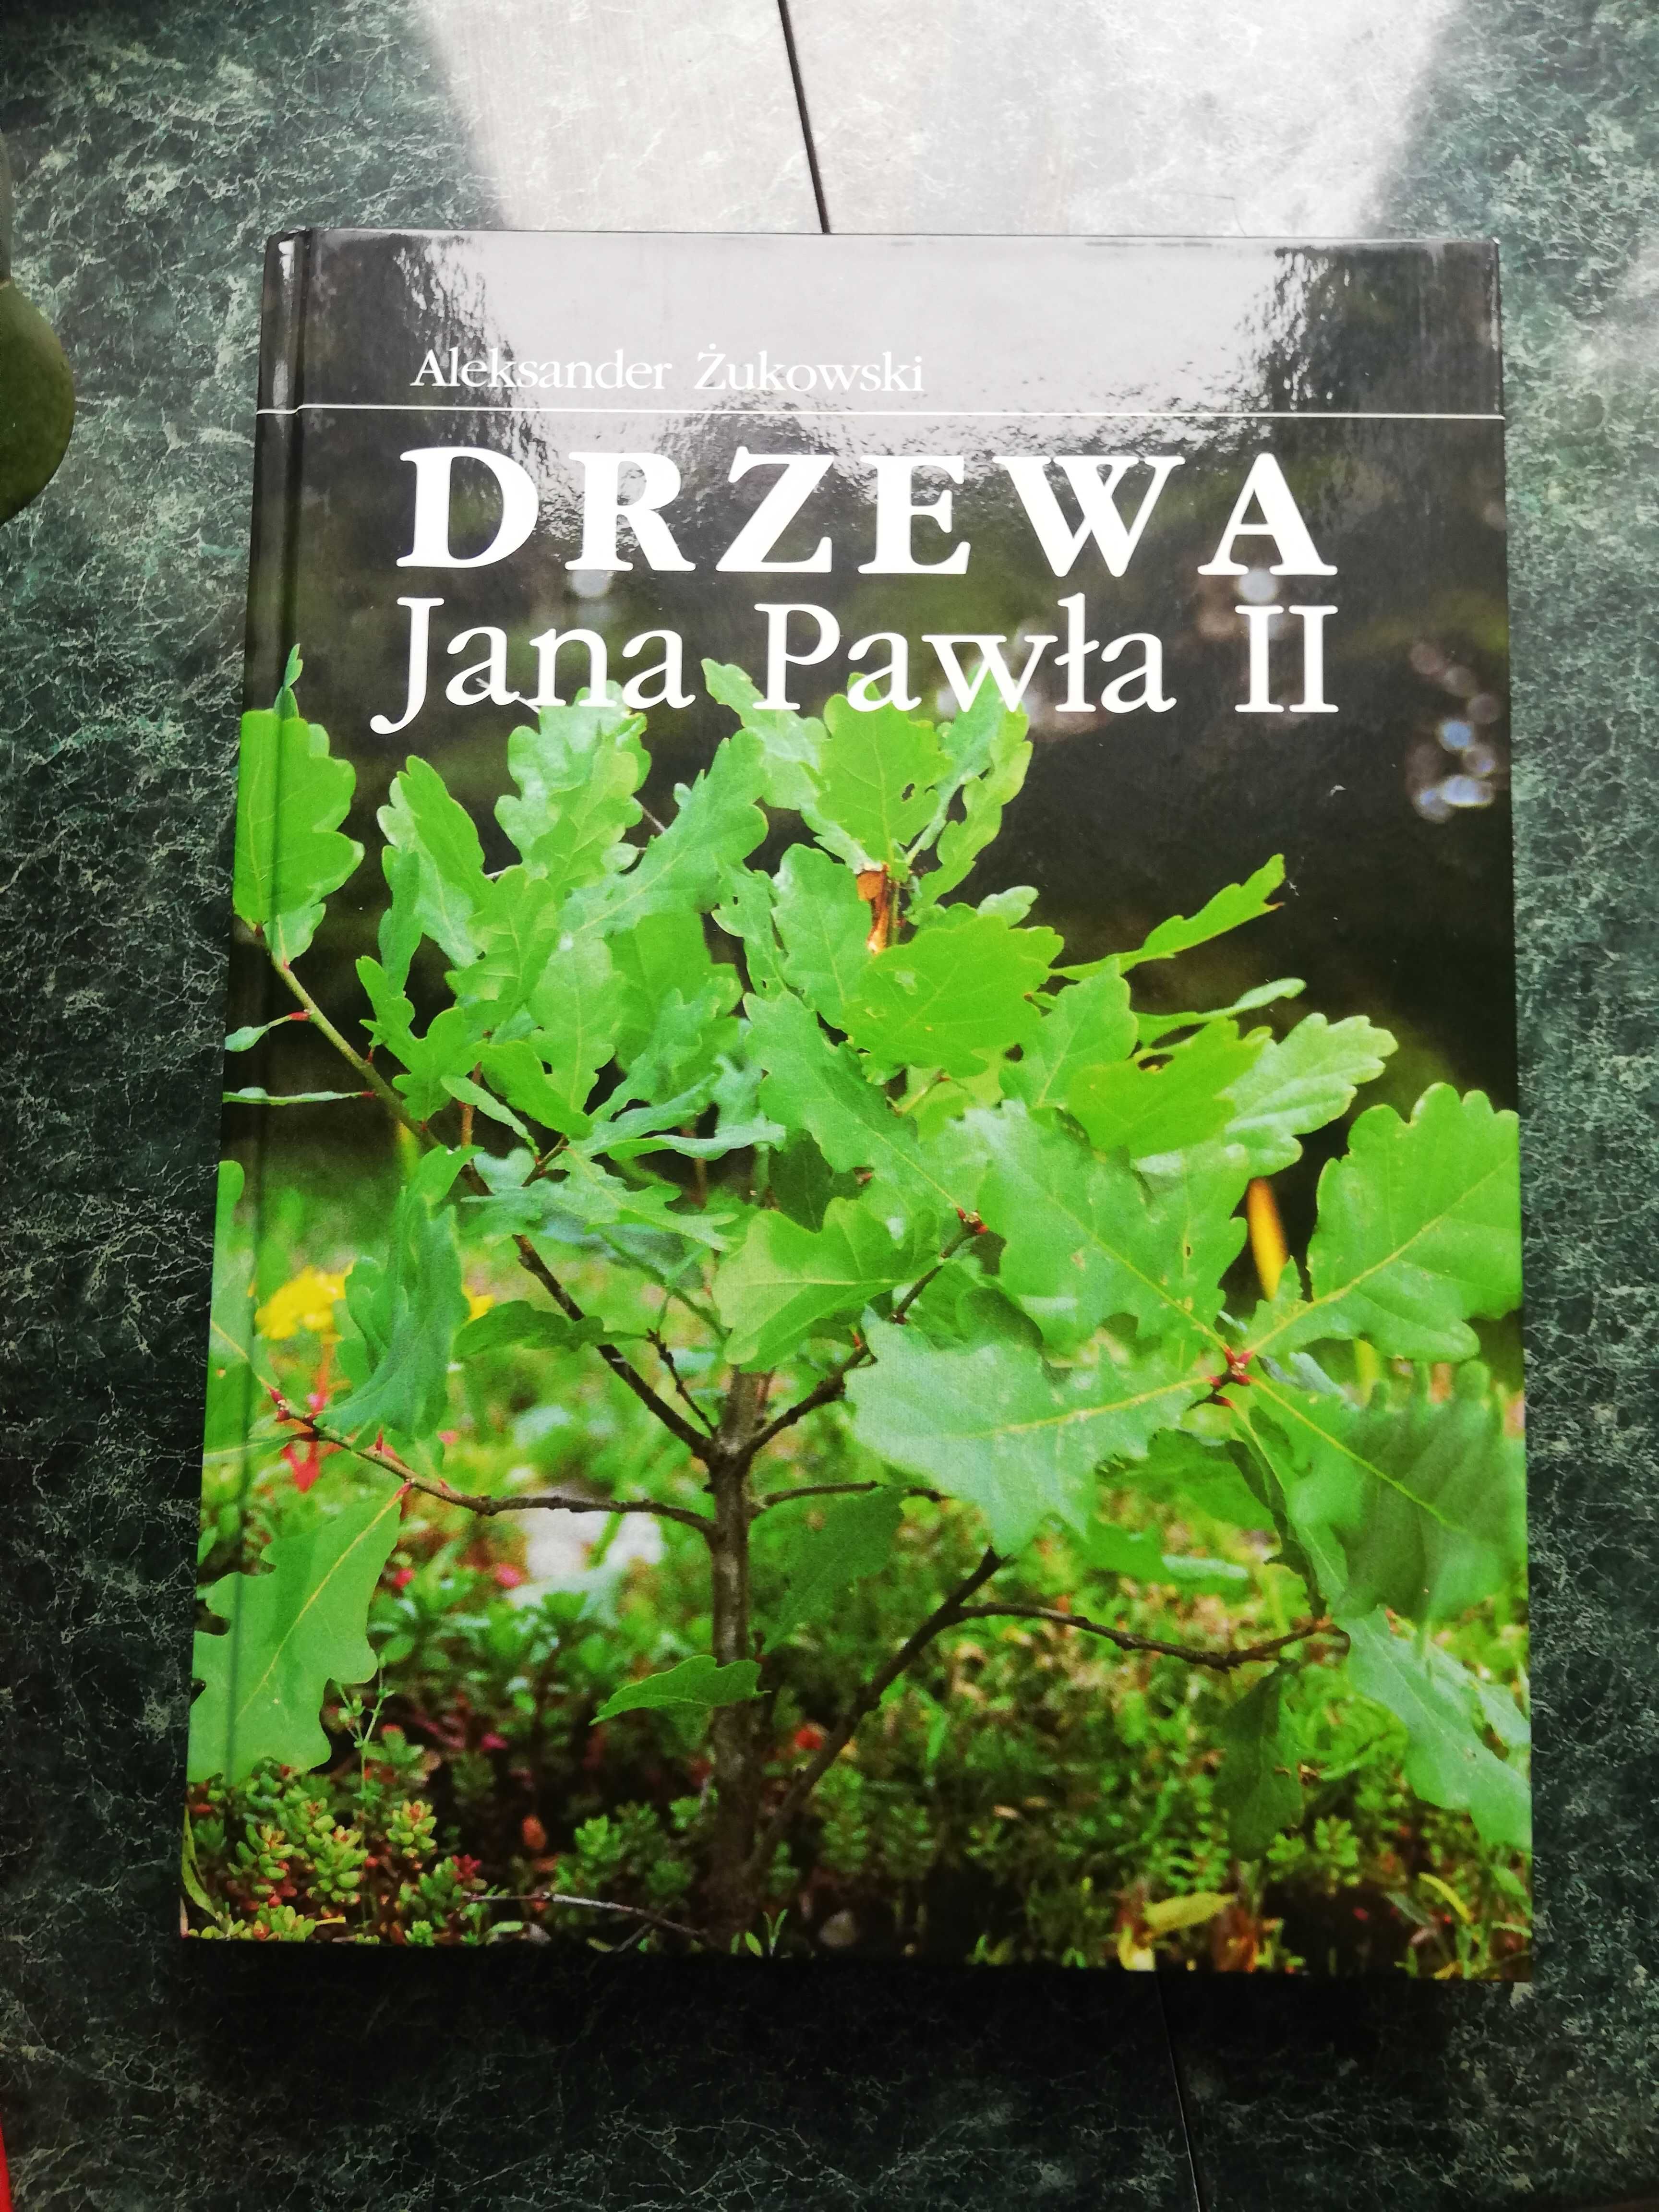 Piękne wydana książka o Janie Pawle II  pt."Drzewa Jana Pawła II"